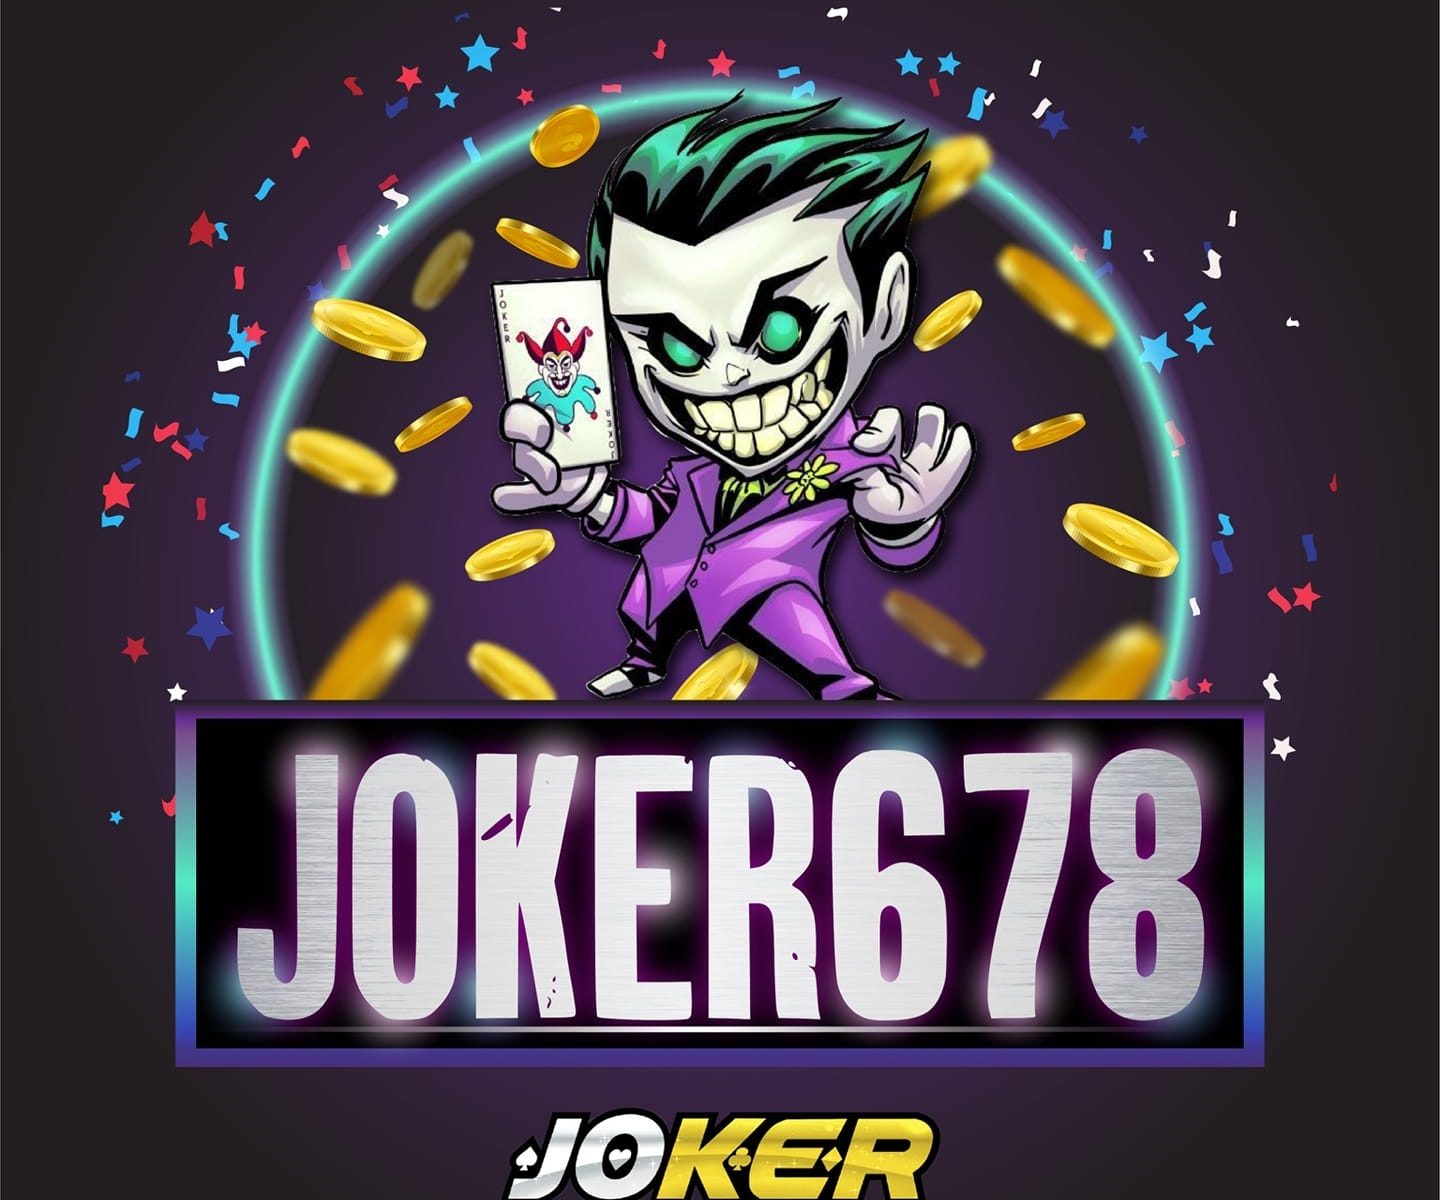 Joker678